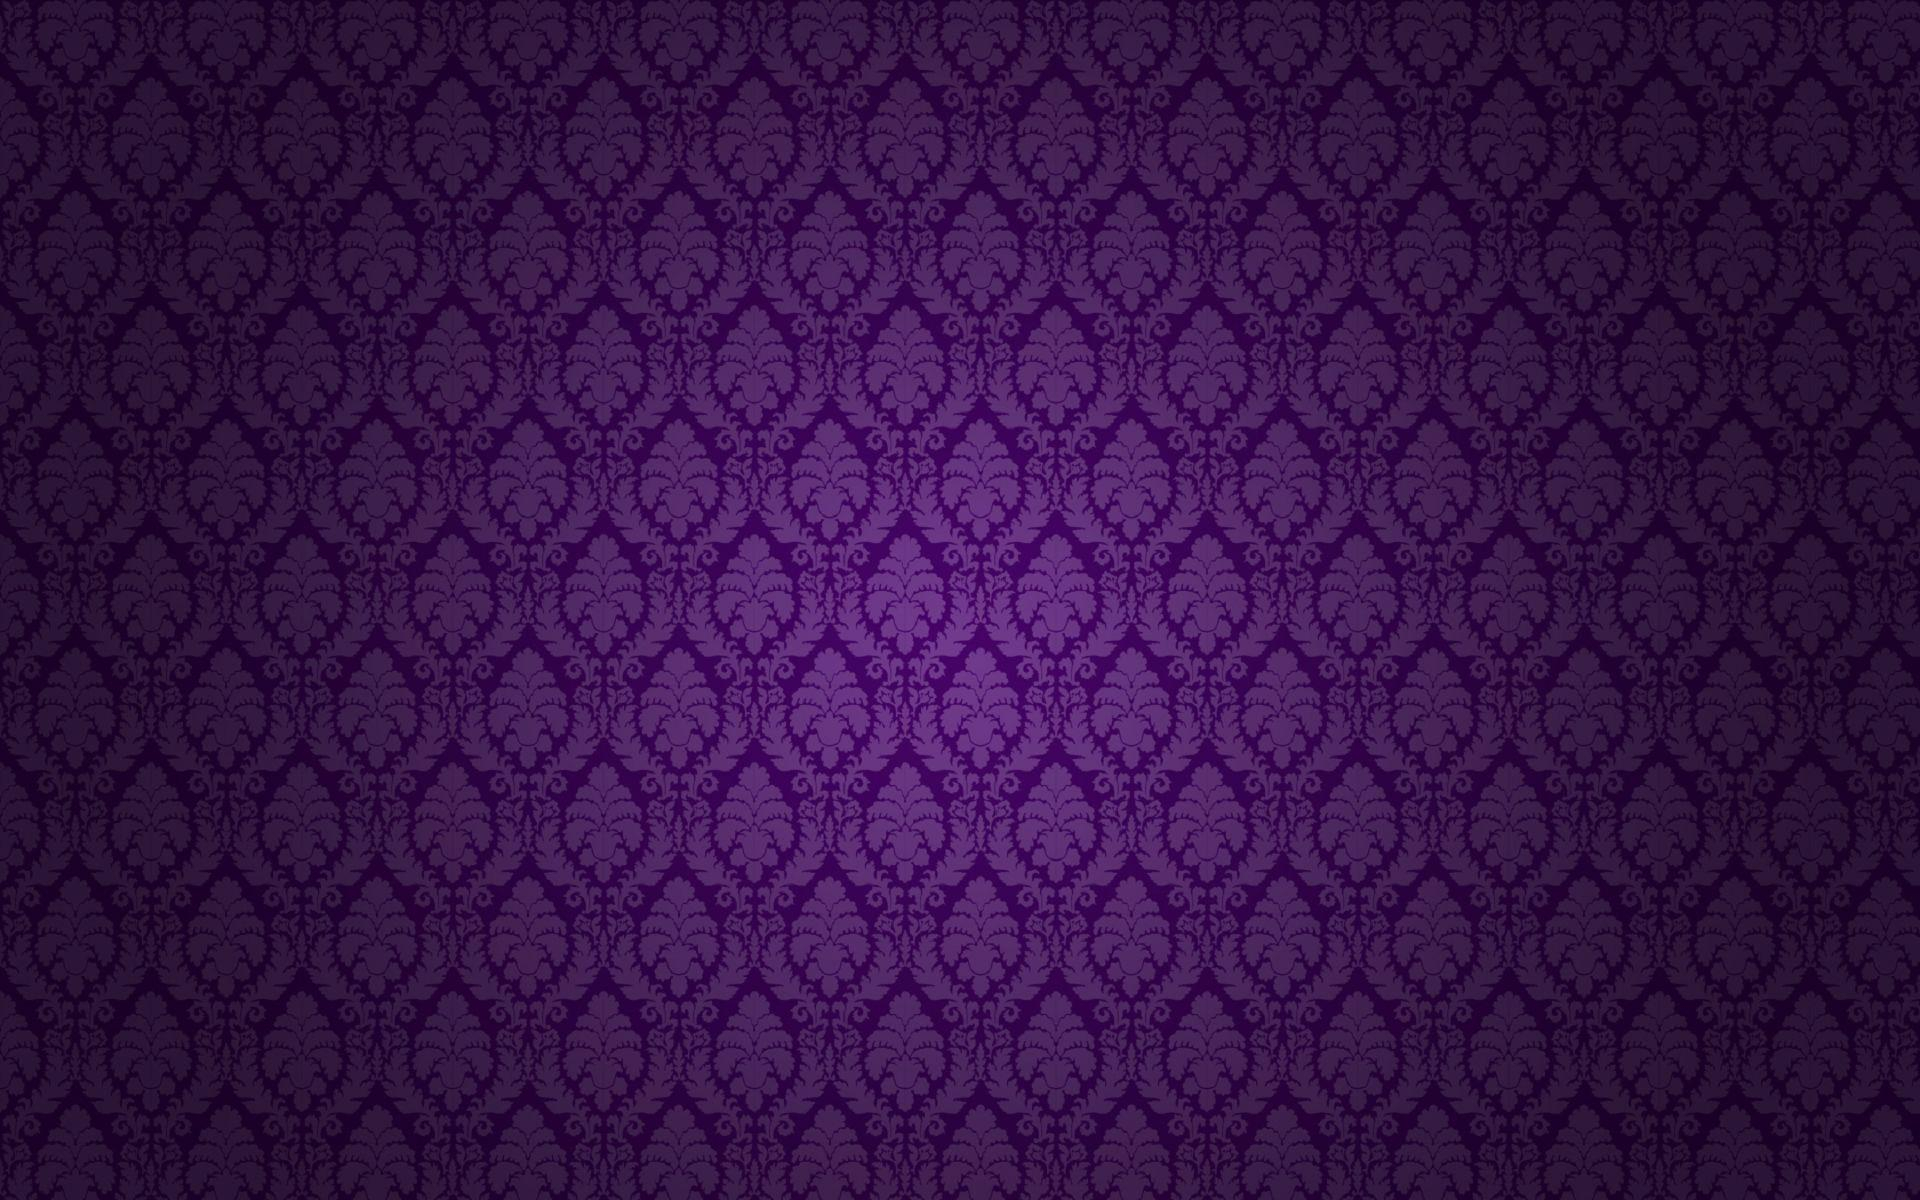 dark purple backgrounds - wallpaper cave